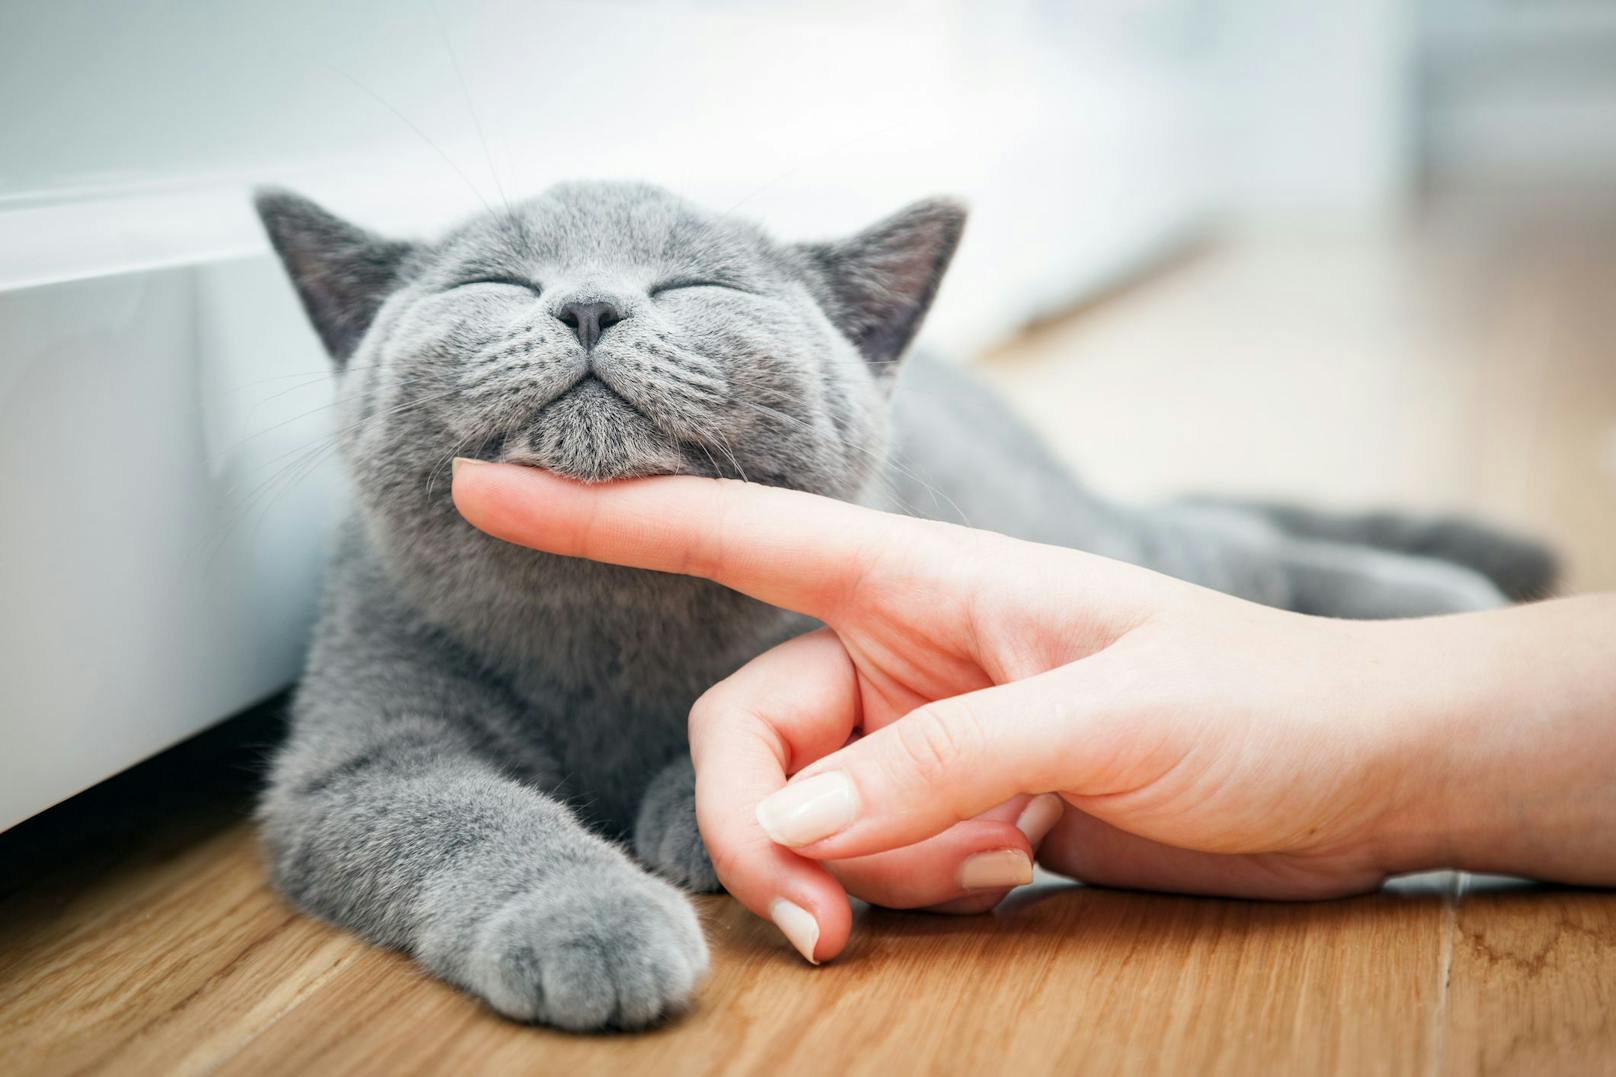 Mit Fingerspitzen und Fingernägeln sollte man das Katzengesicht mit angenehmen Druck massieren.